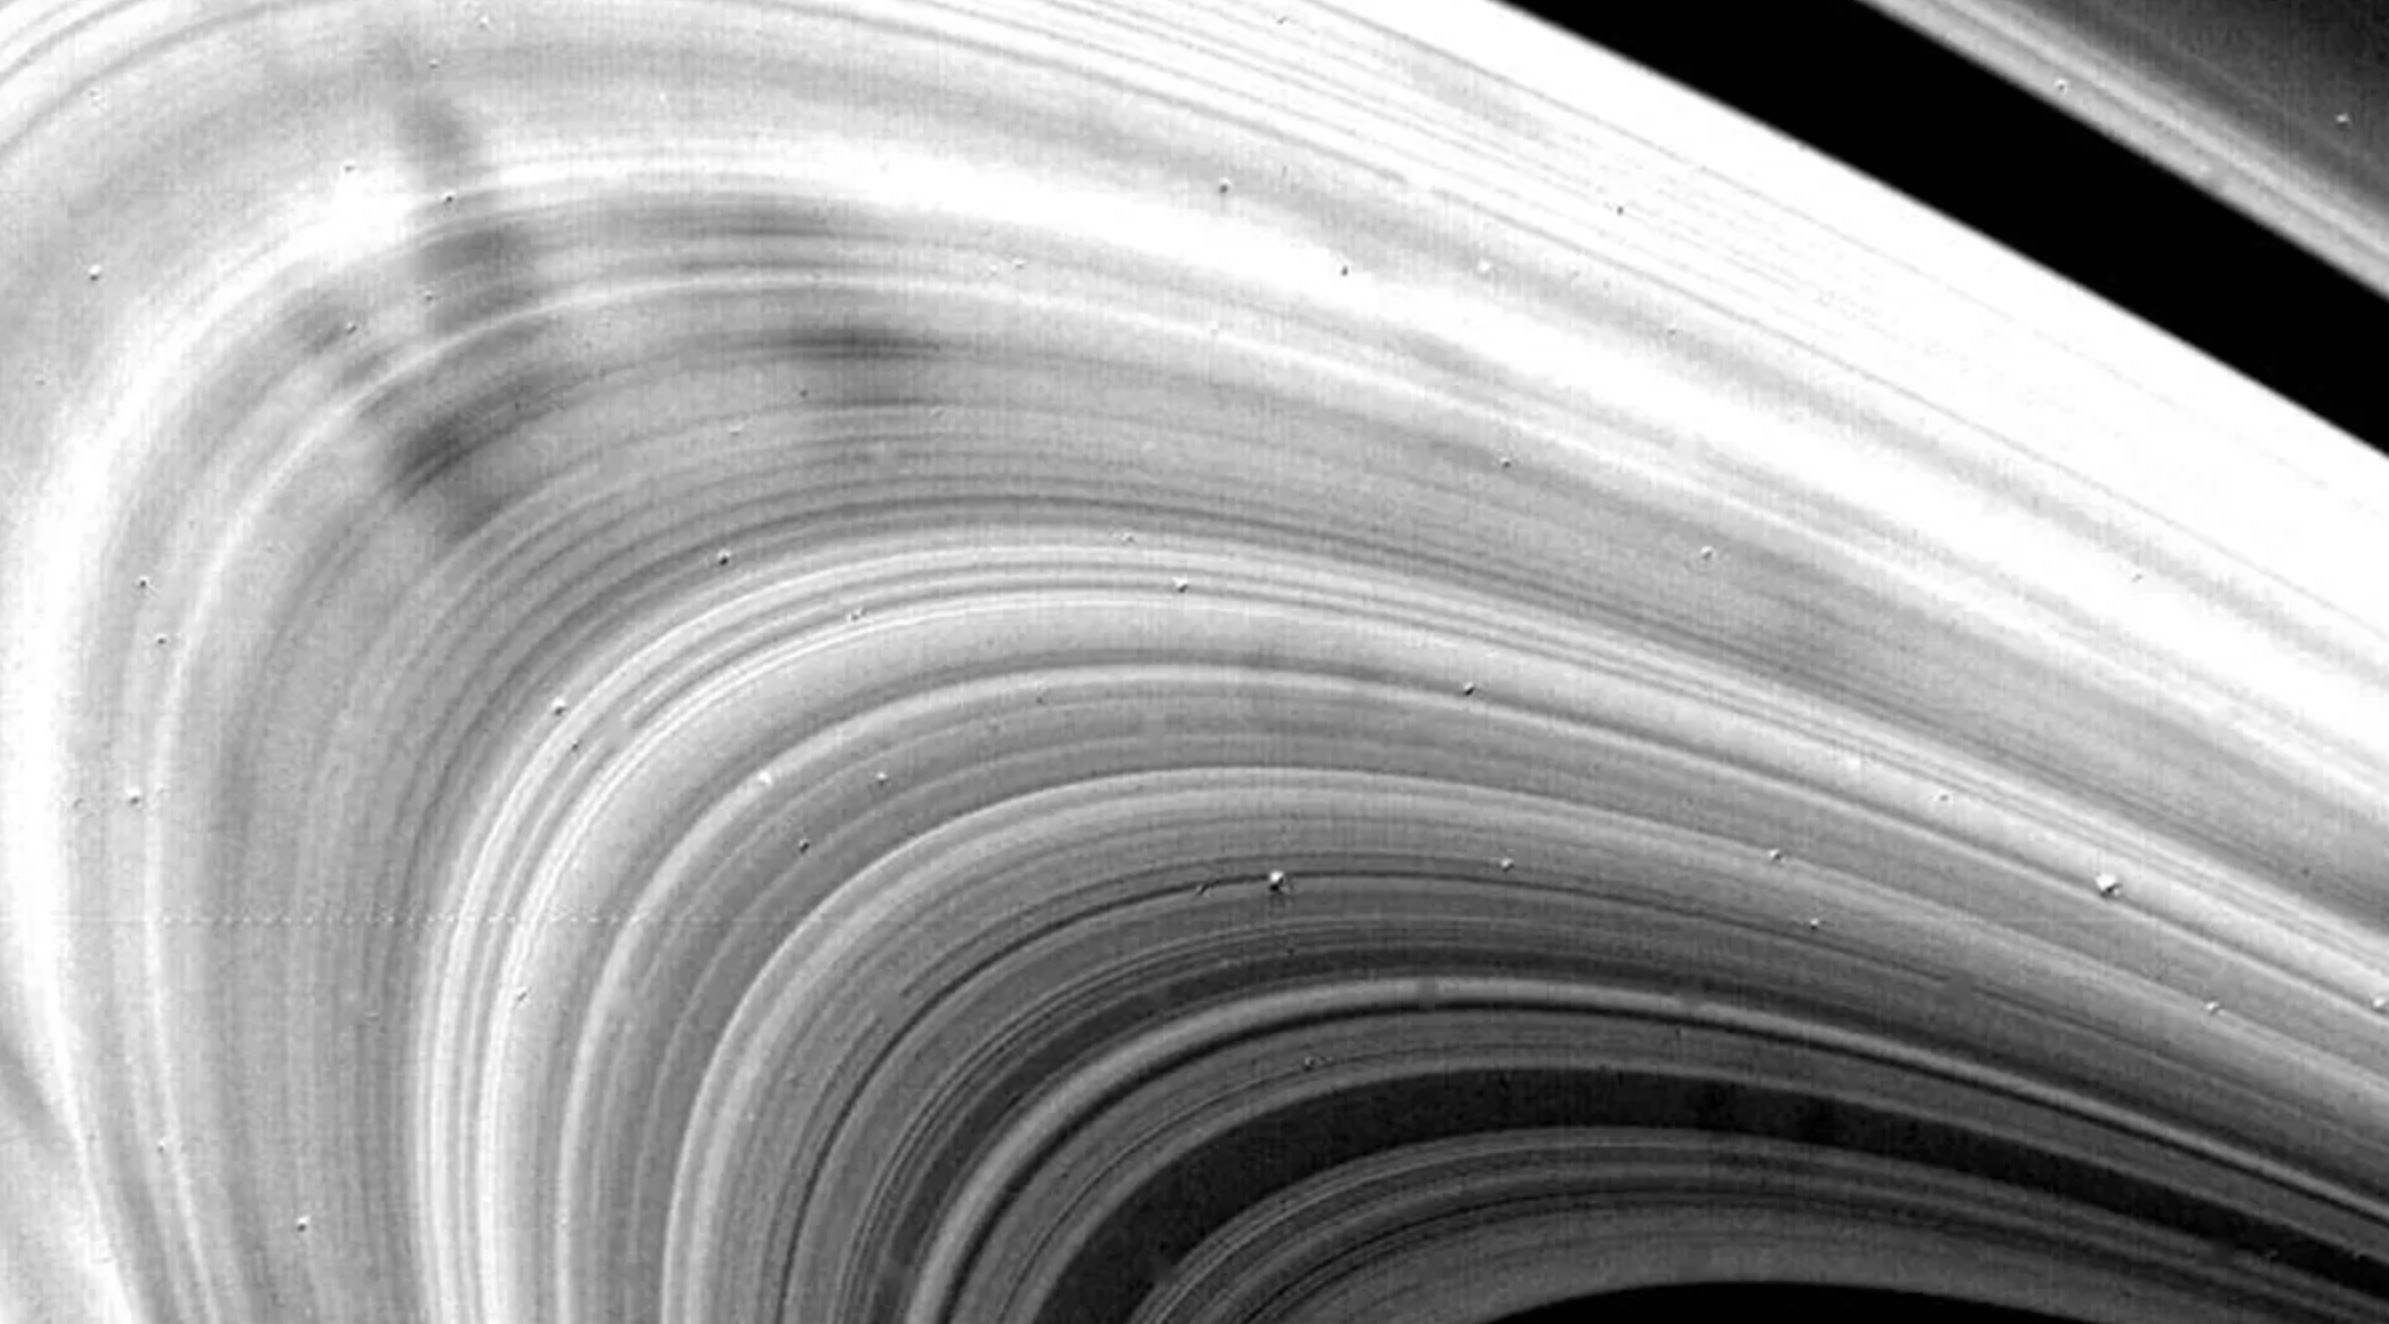 Tajanstvene tamne mrlje uočene na Saturnovim prstenima